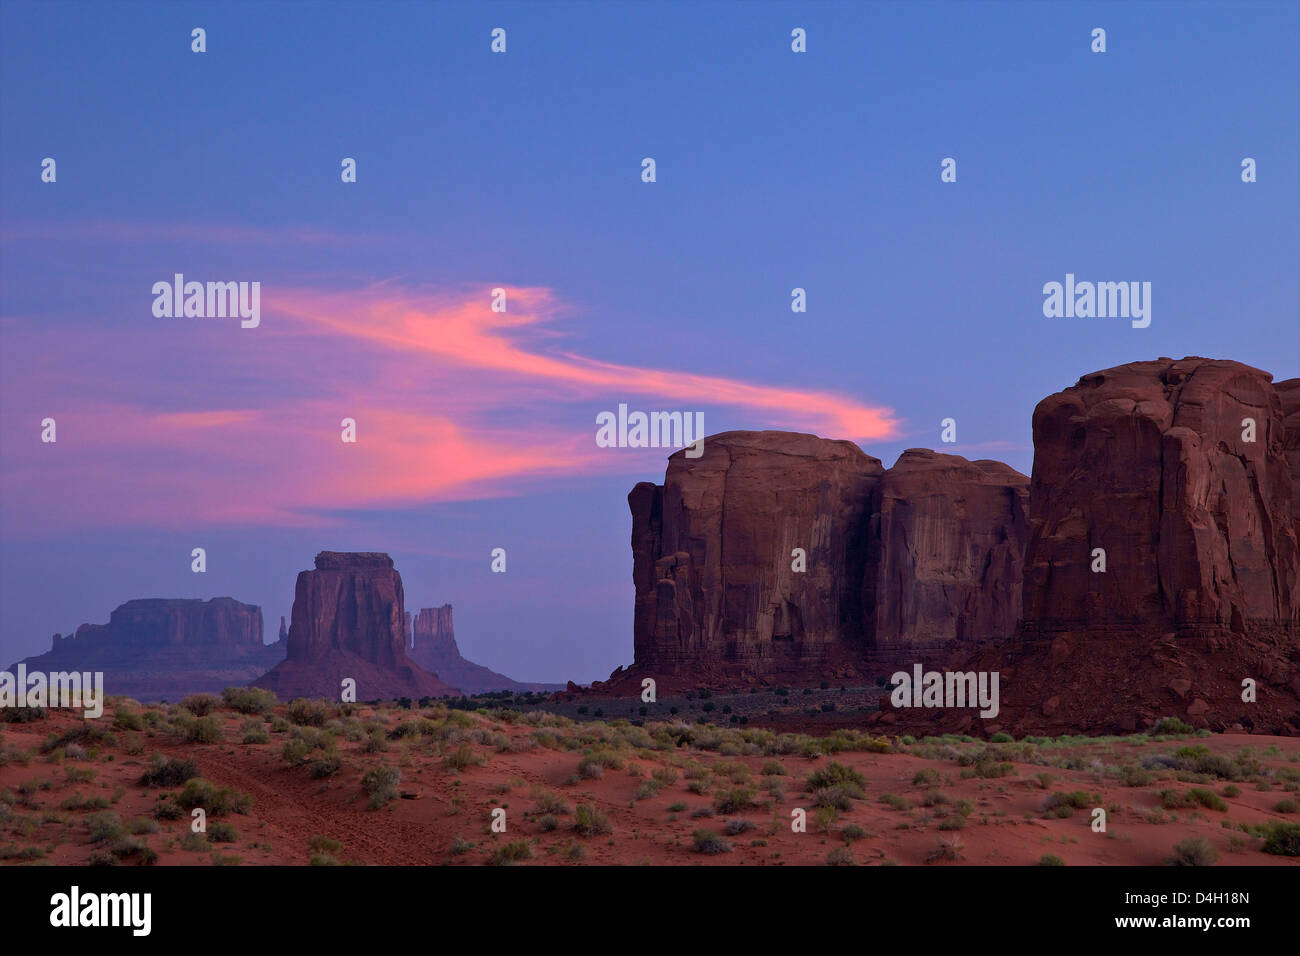 Alba nuvole sopra il parco tribale Navajo Monument Valley, Utah, Stati Uniti d'America Foto Stock